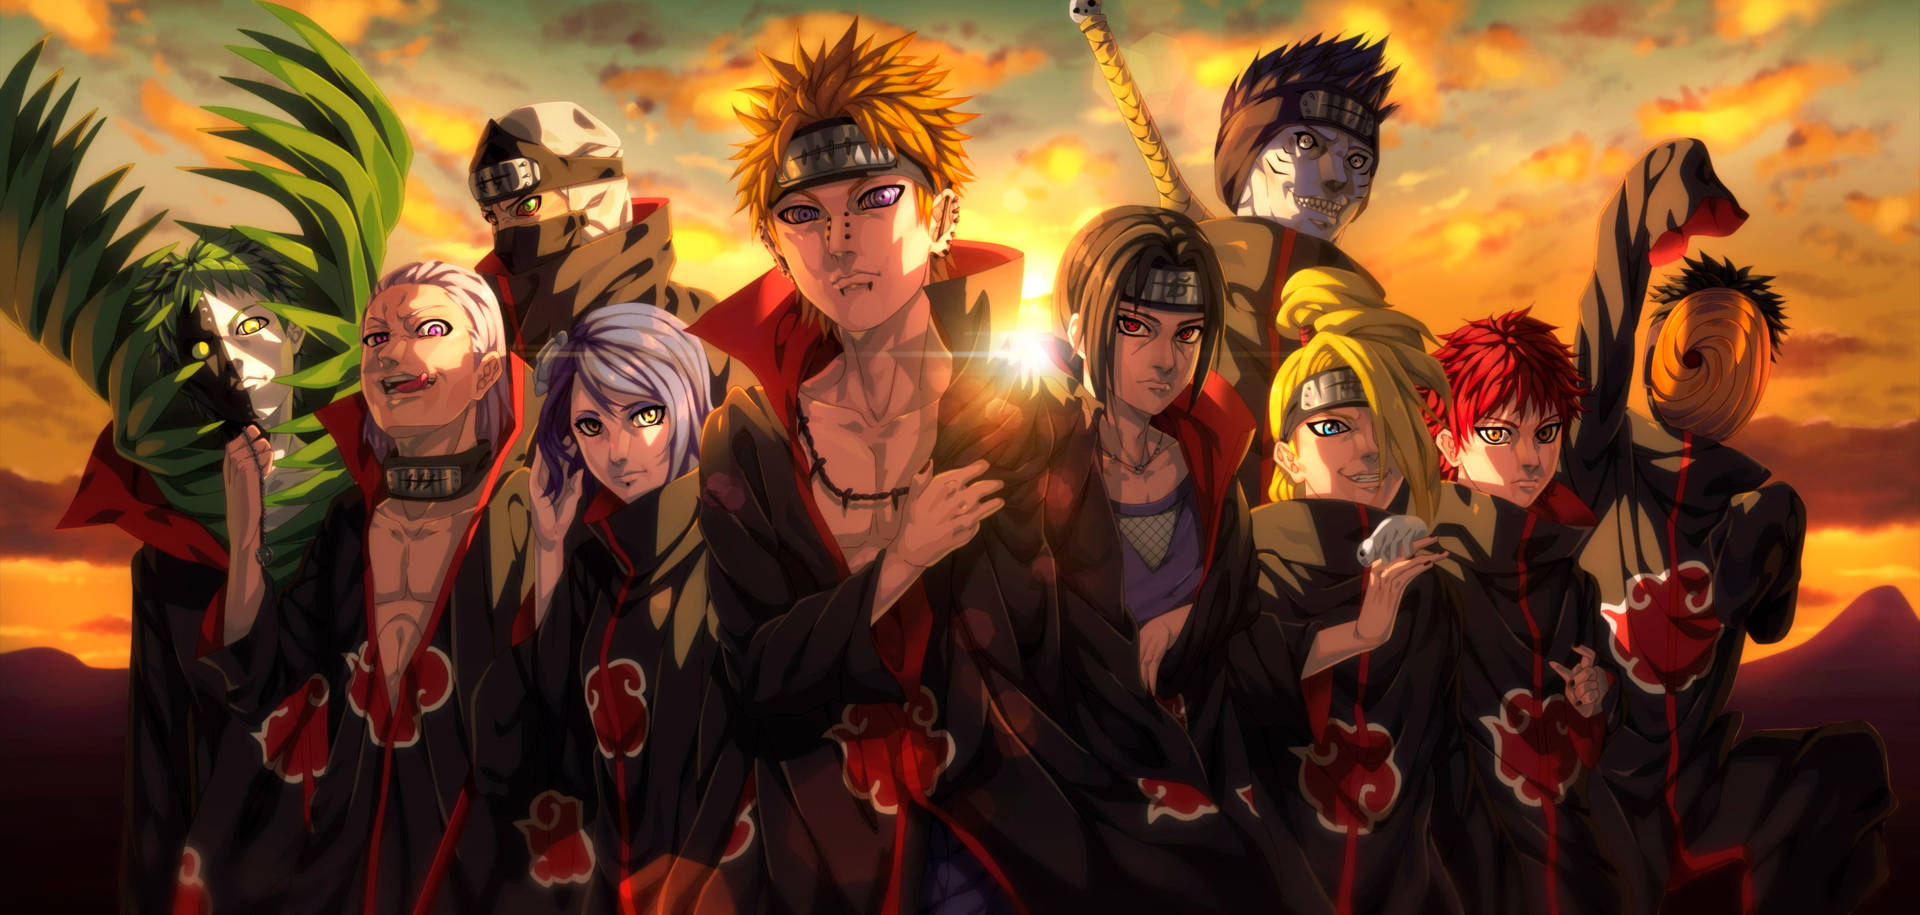 Akatsuki Naruto 4k Background